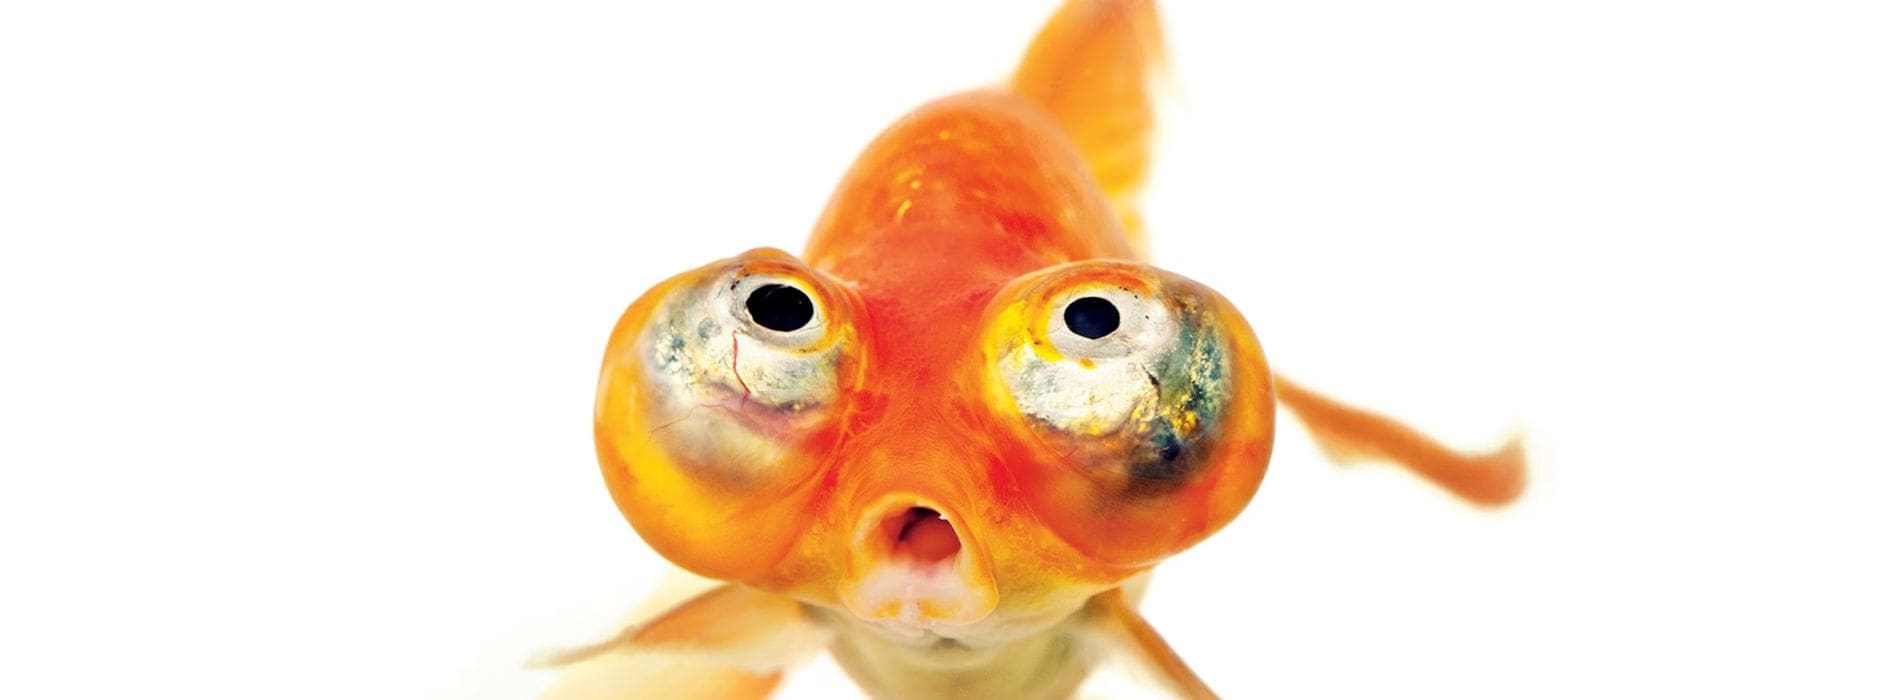 Himmlischer-Auge-Goldfisch-blickt-in-die-Kamera